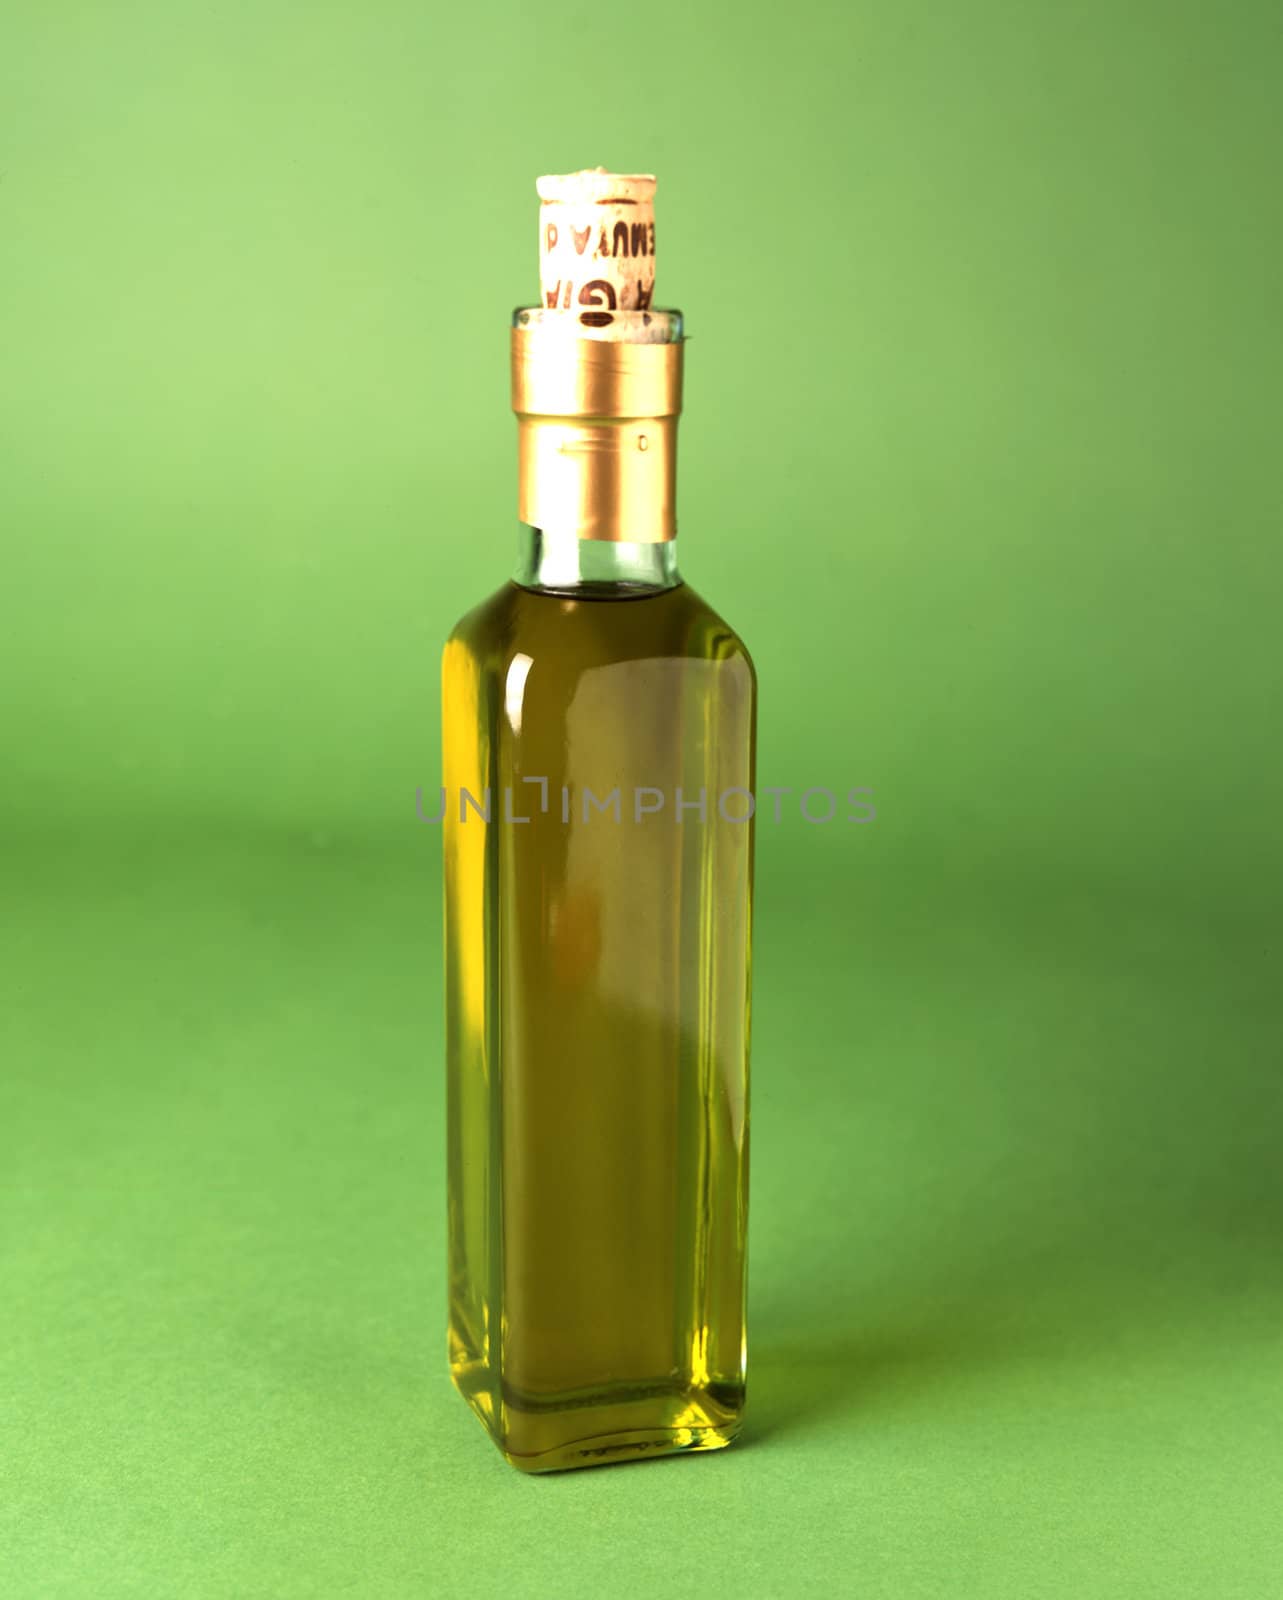 Olive Oil  by DirkWestphal